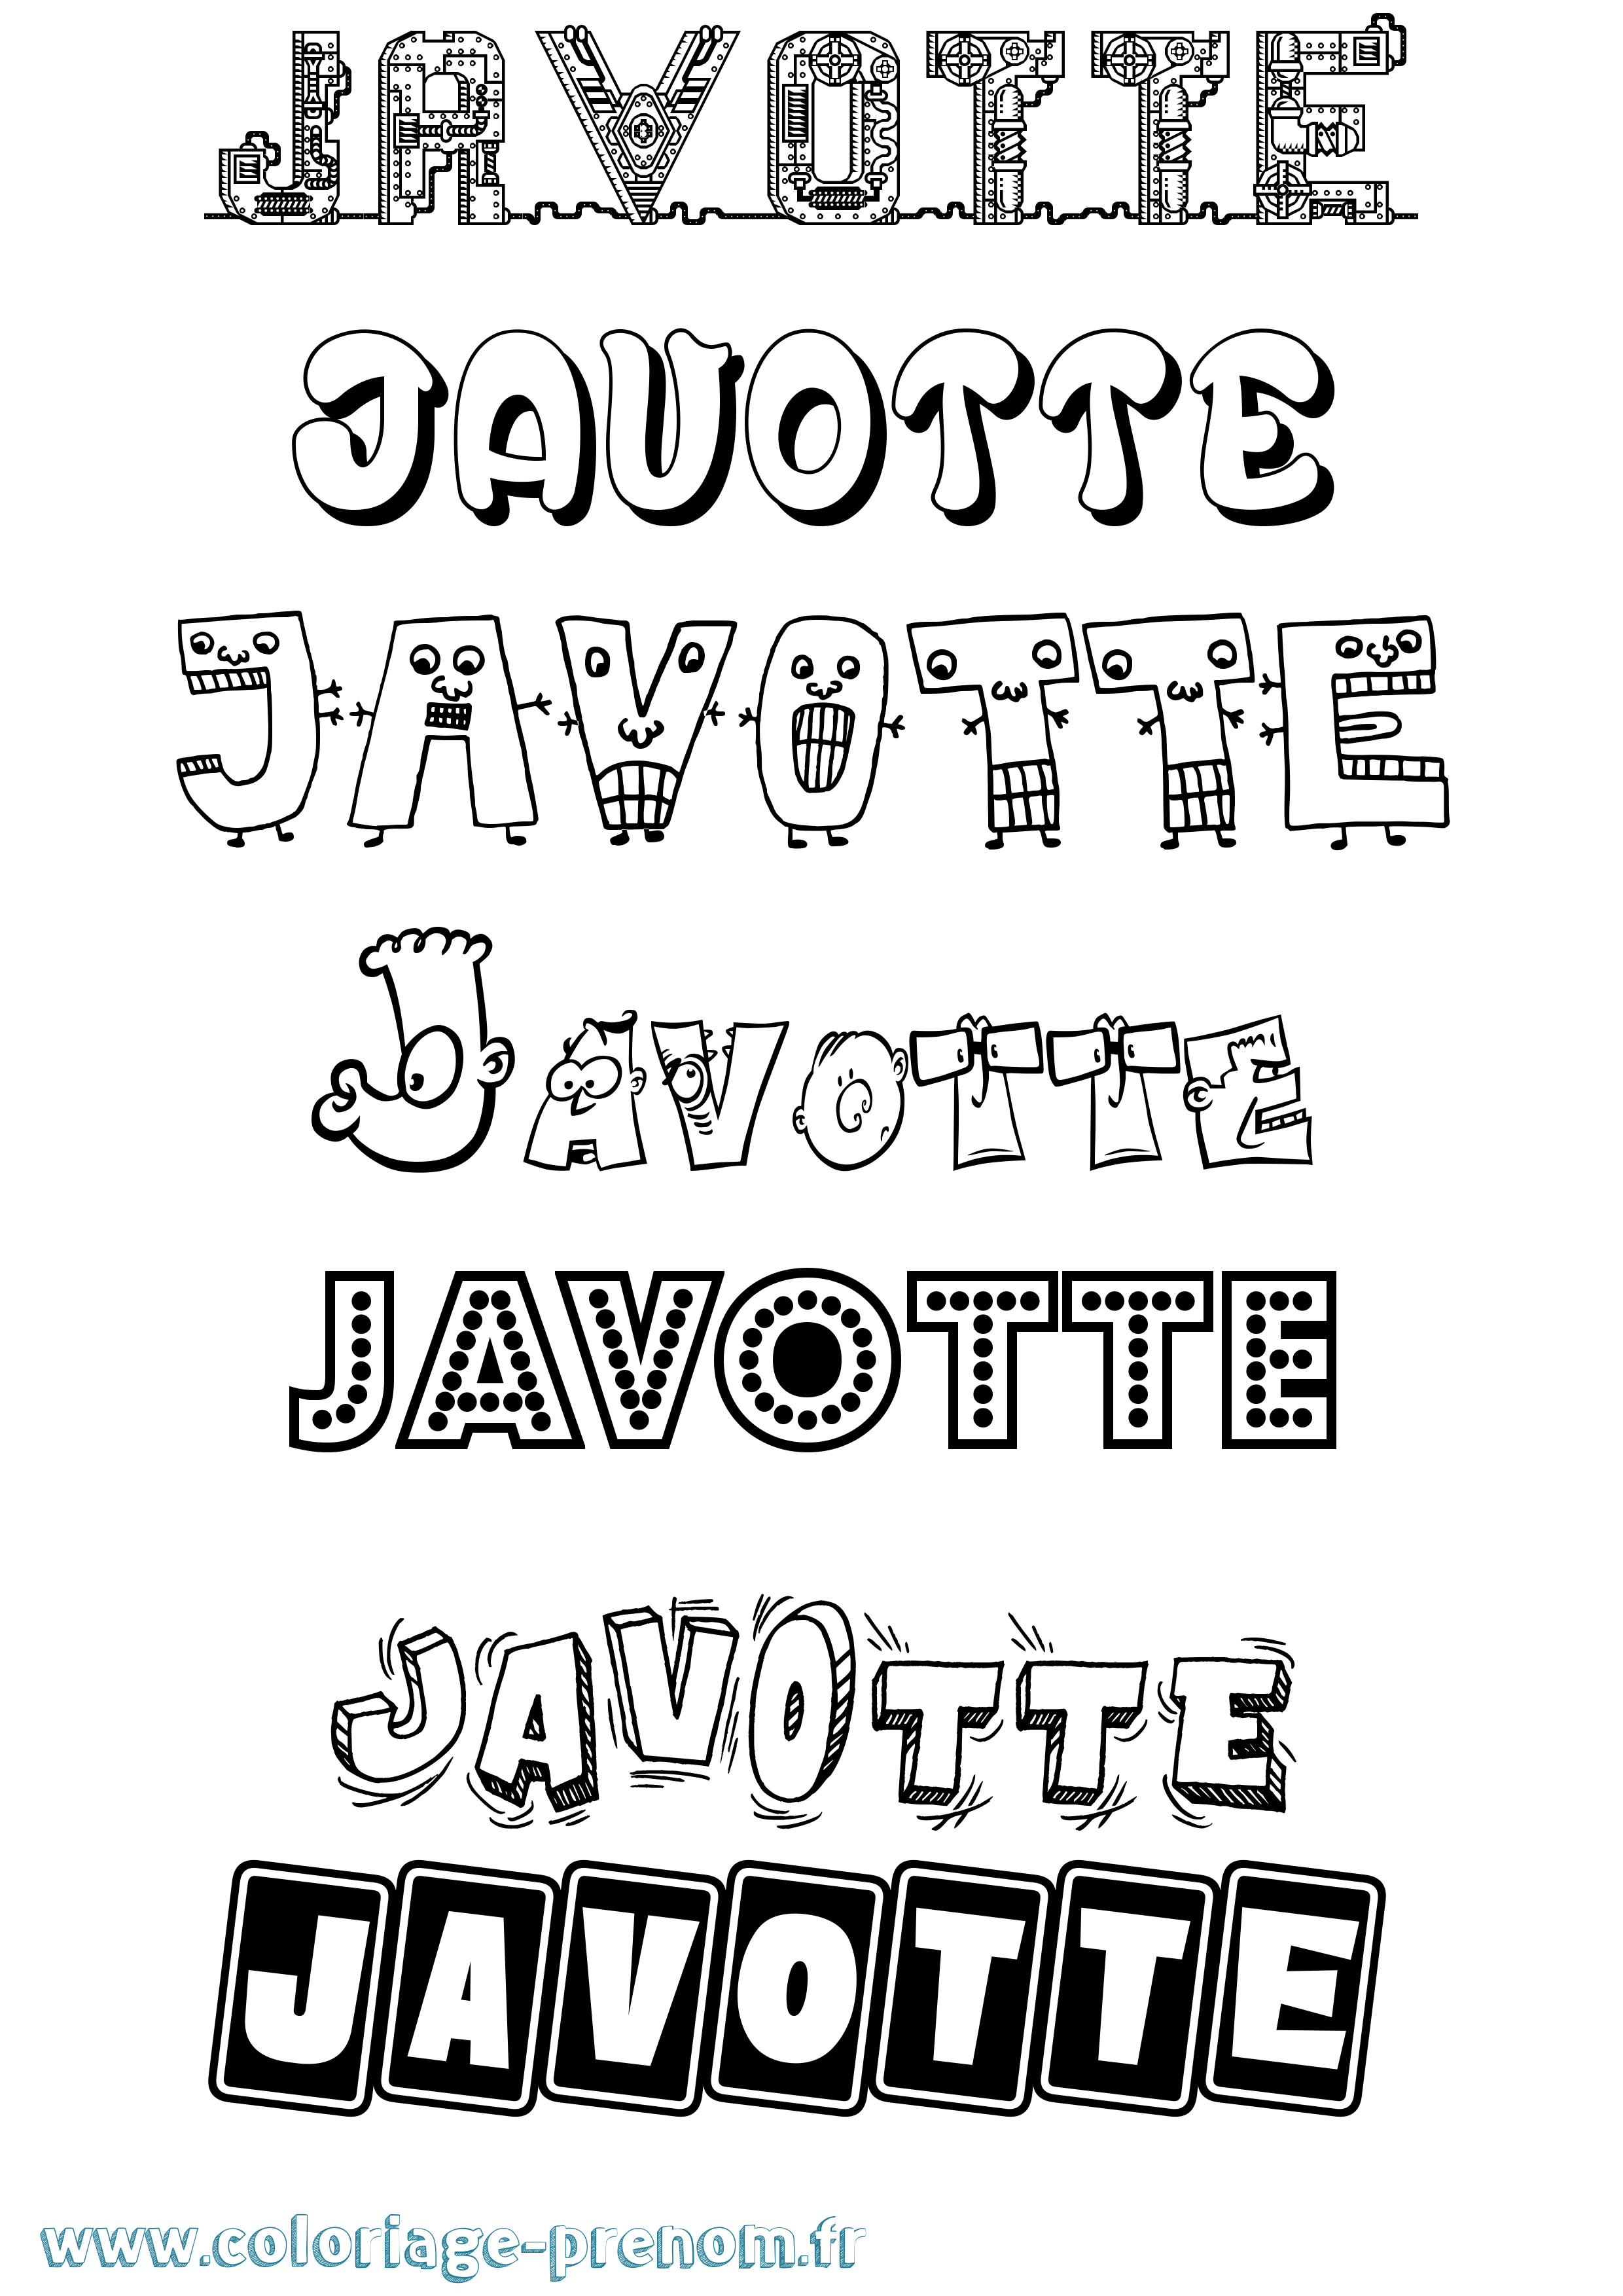 Coloriage prénom Javotte Fun